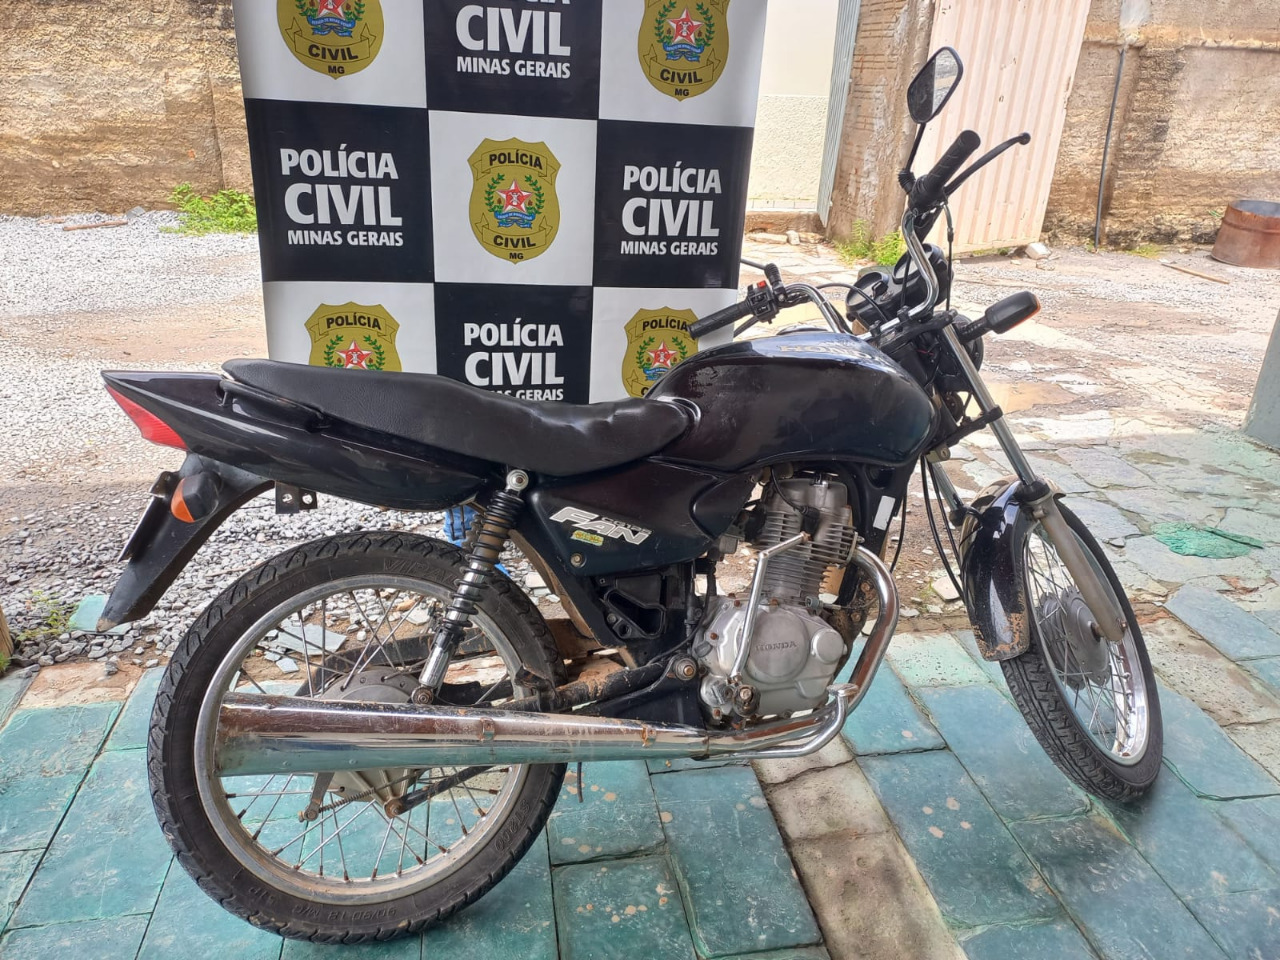 PCMG recupera motocicleta furtada em Januária